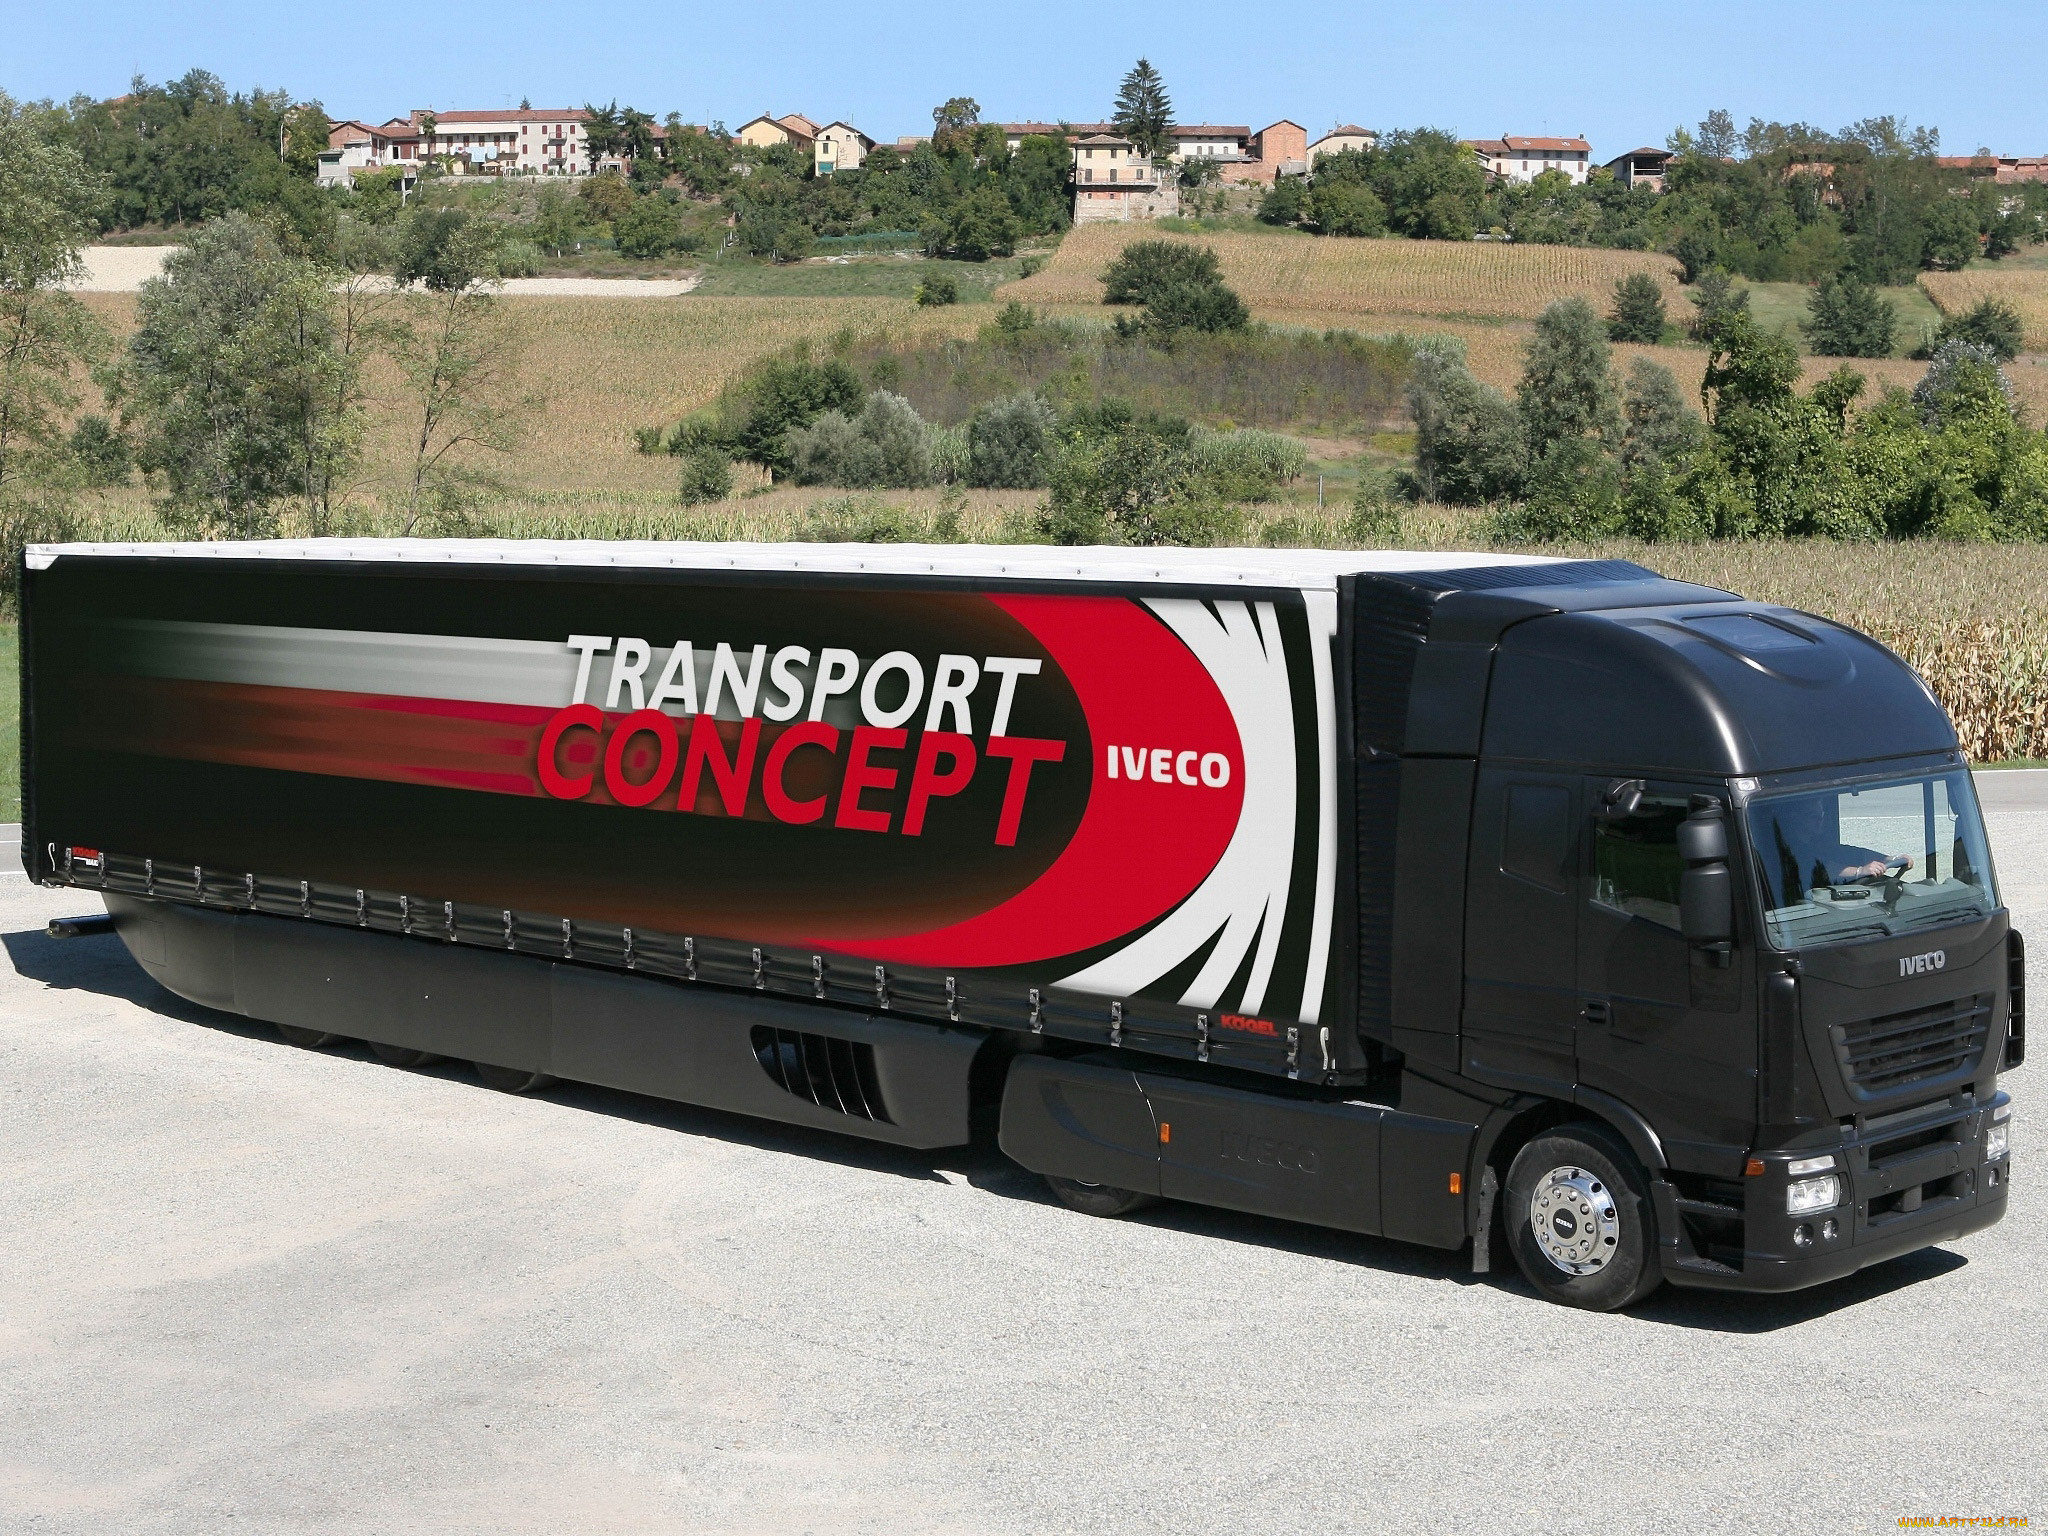 iveco transport concept 2007, , iveco, 2007, transport, concept